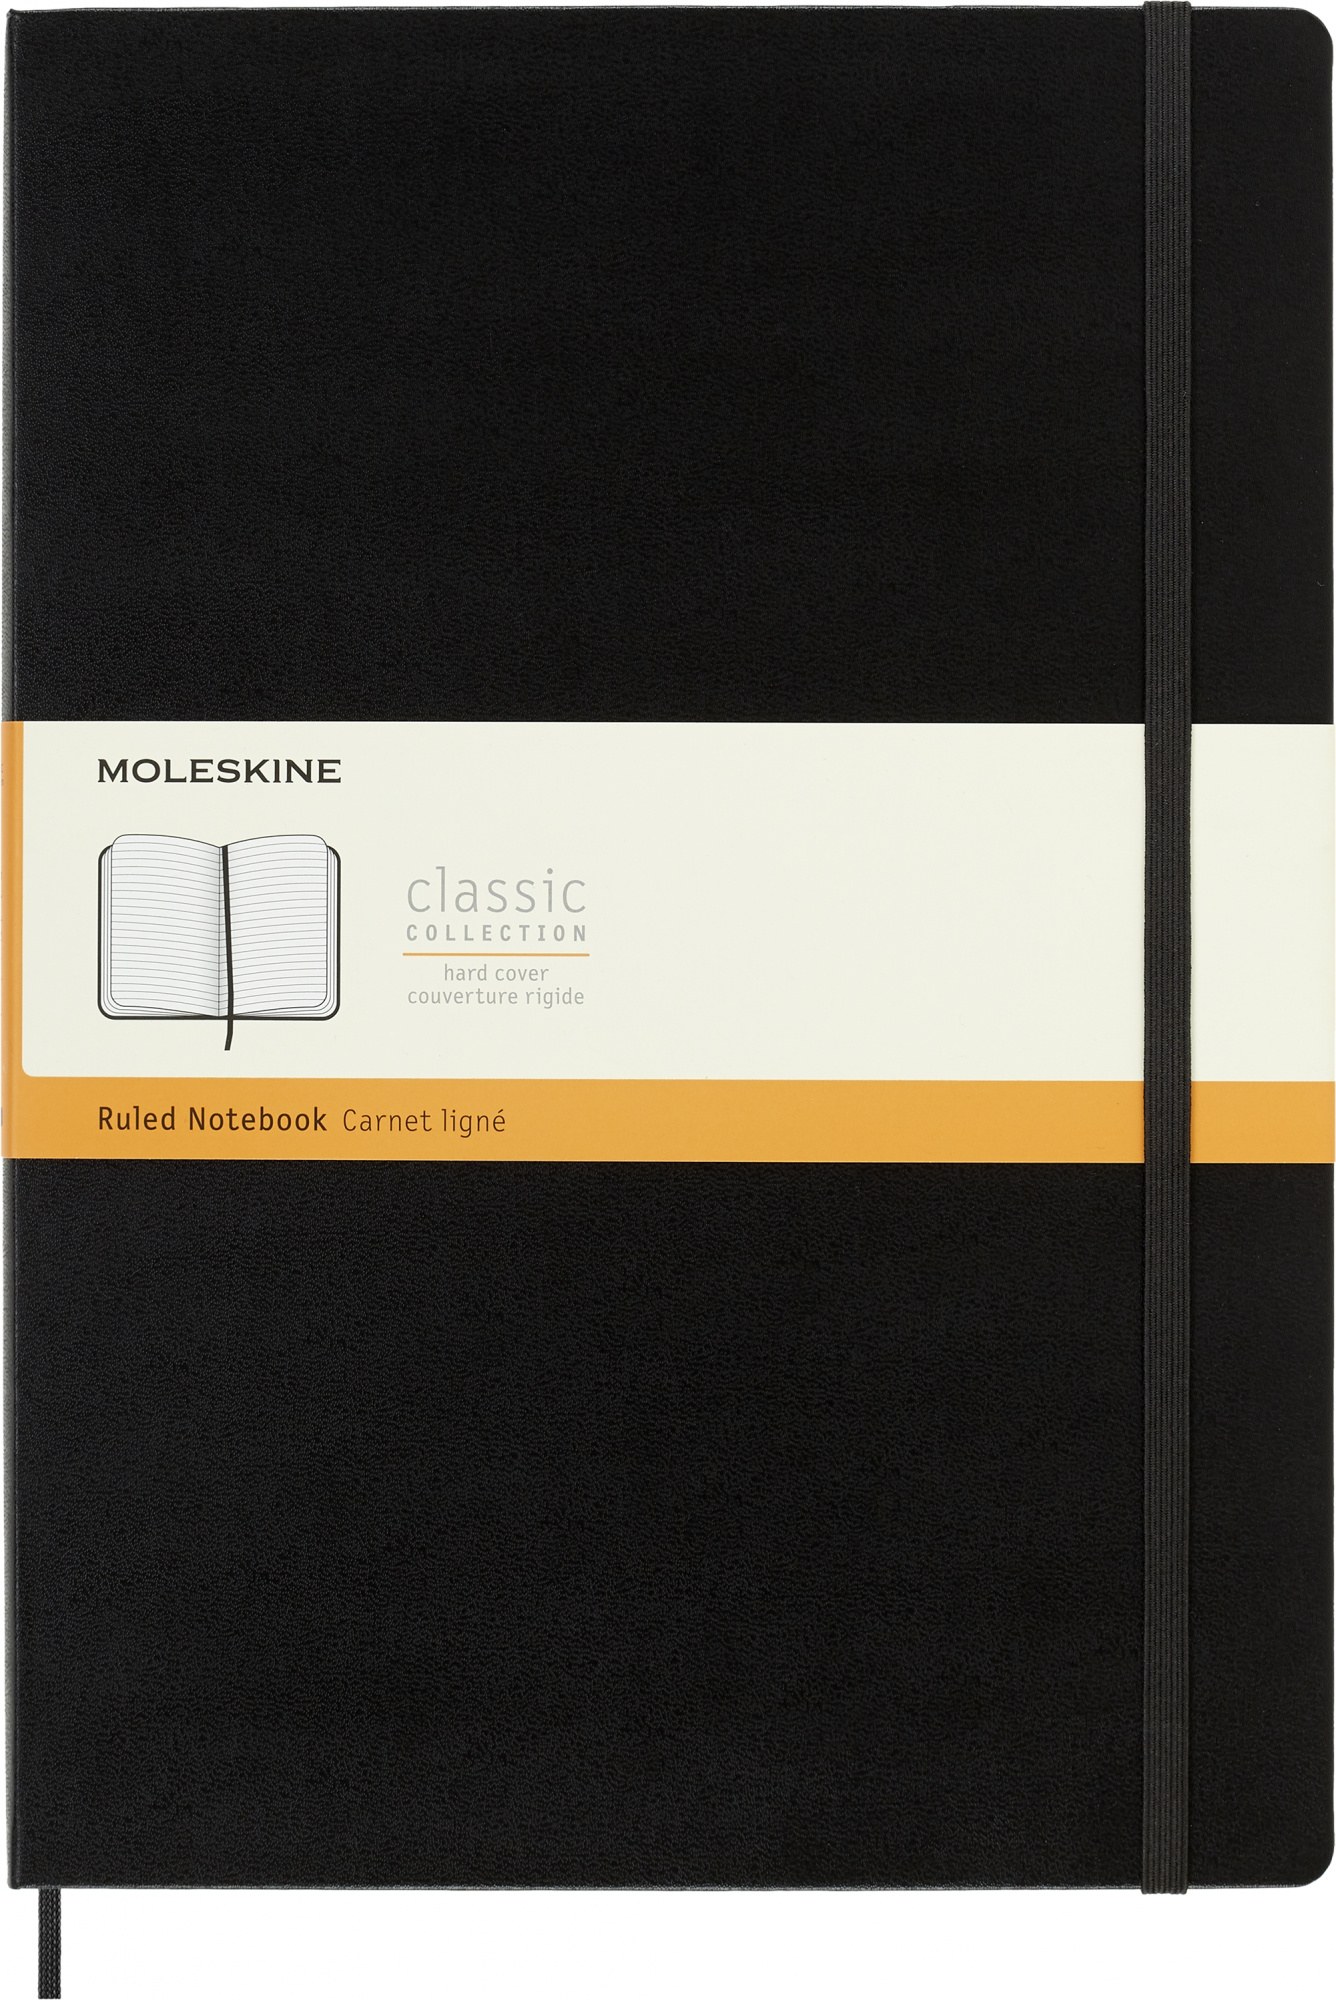 Блокнот Moleskine CLASSIC QP110 A4 192стр. линейка твердая обложка черный